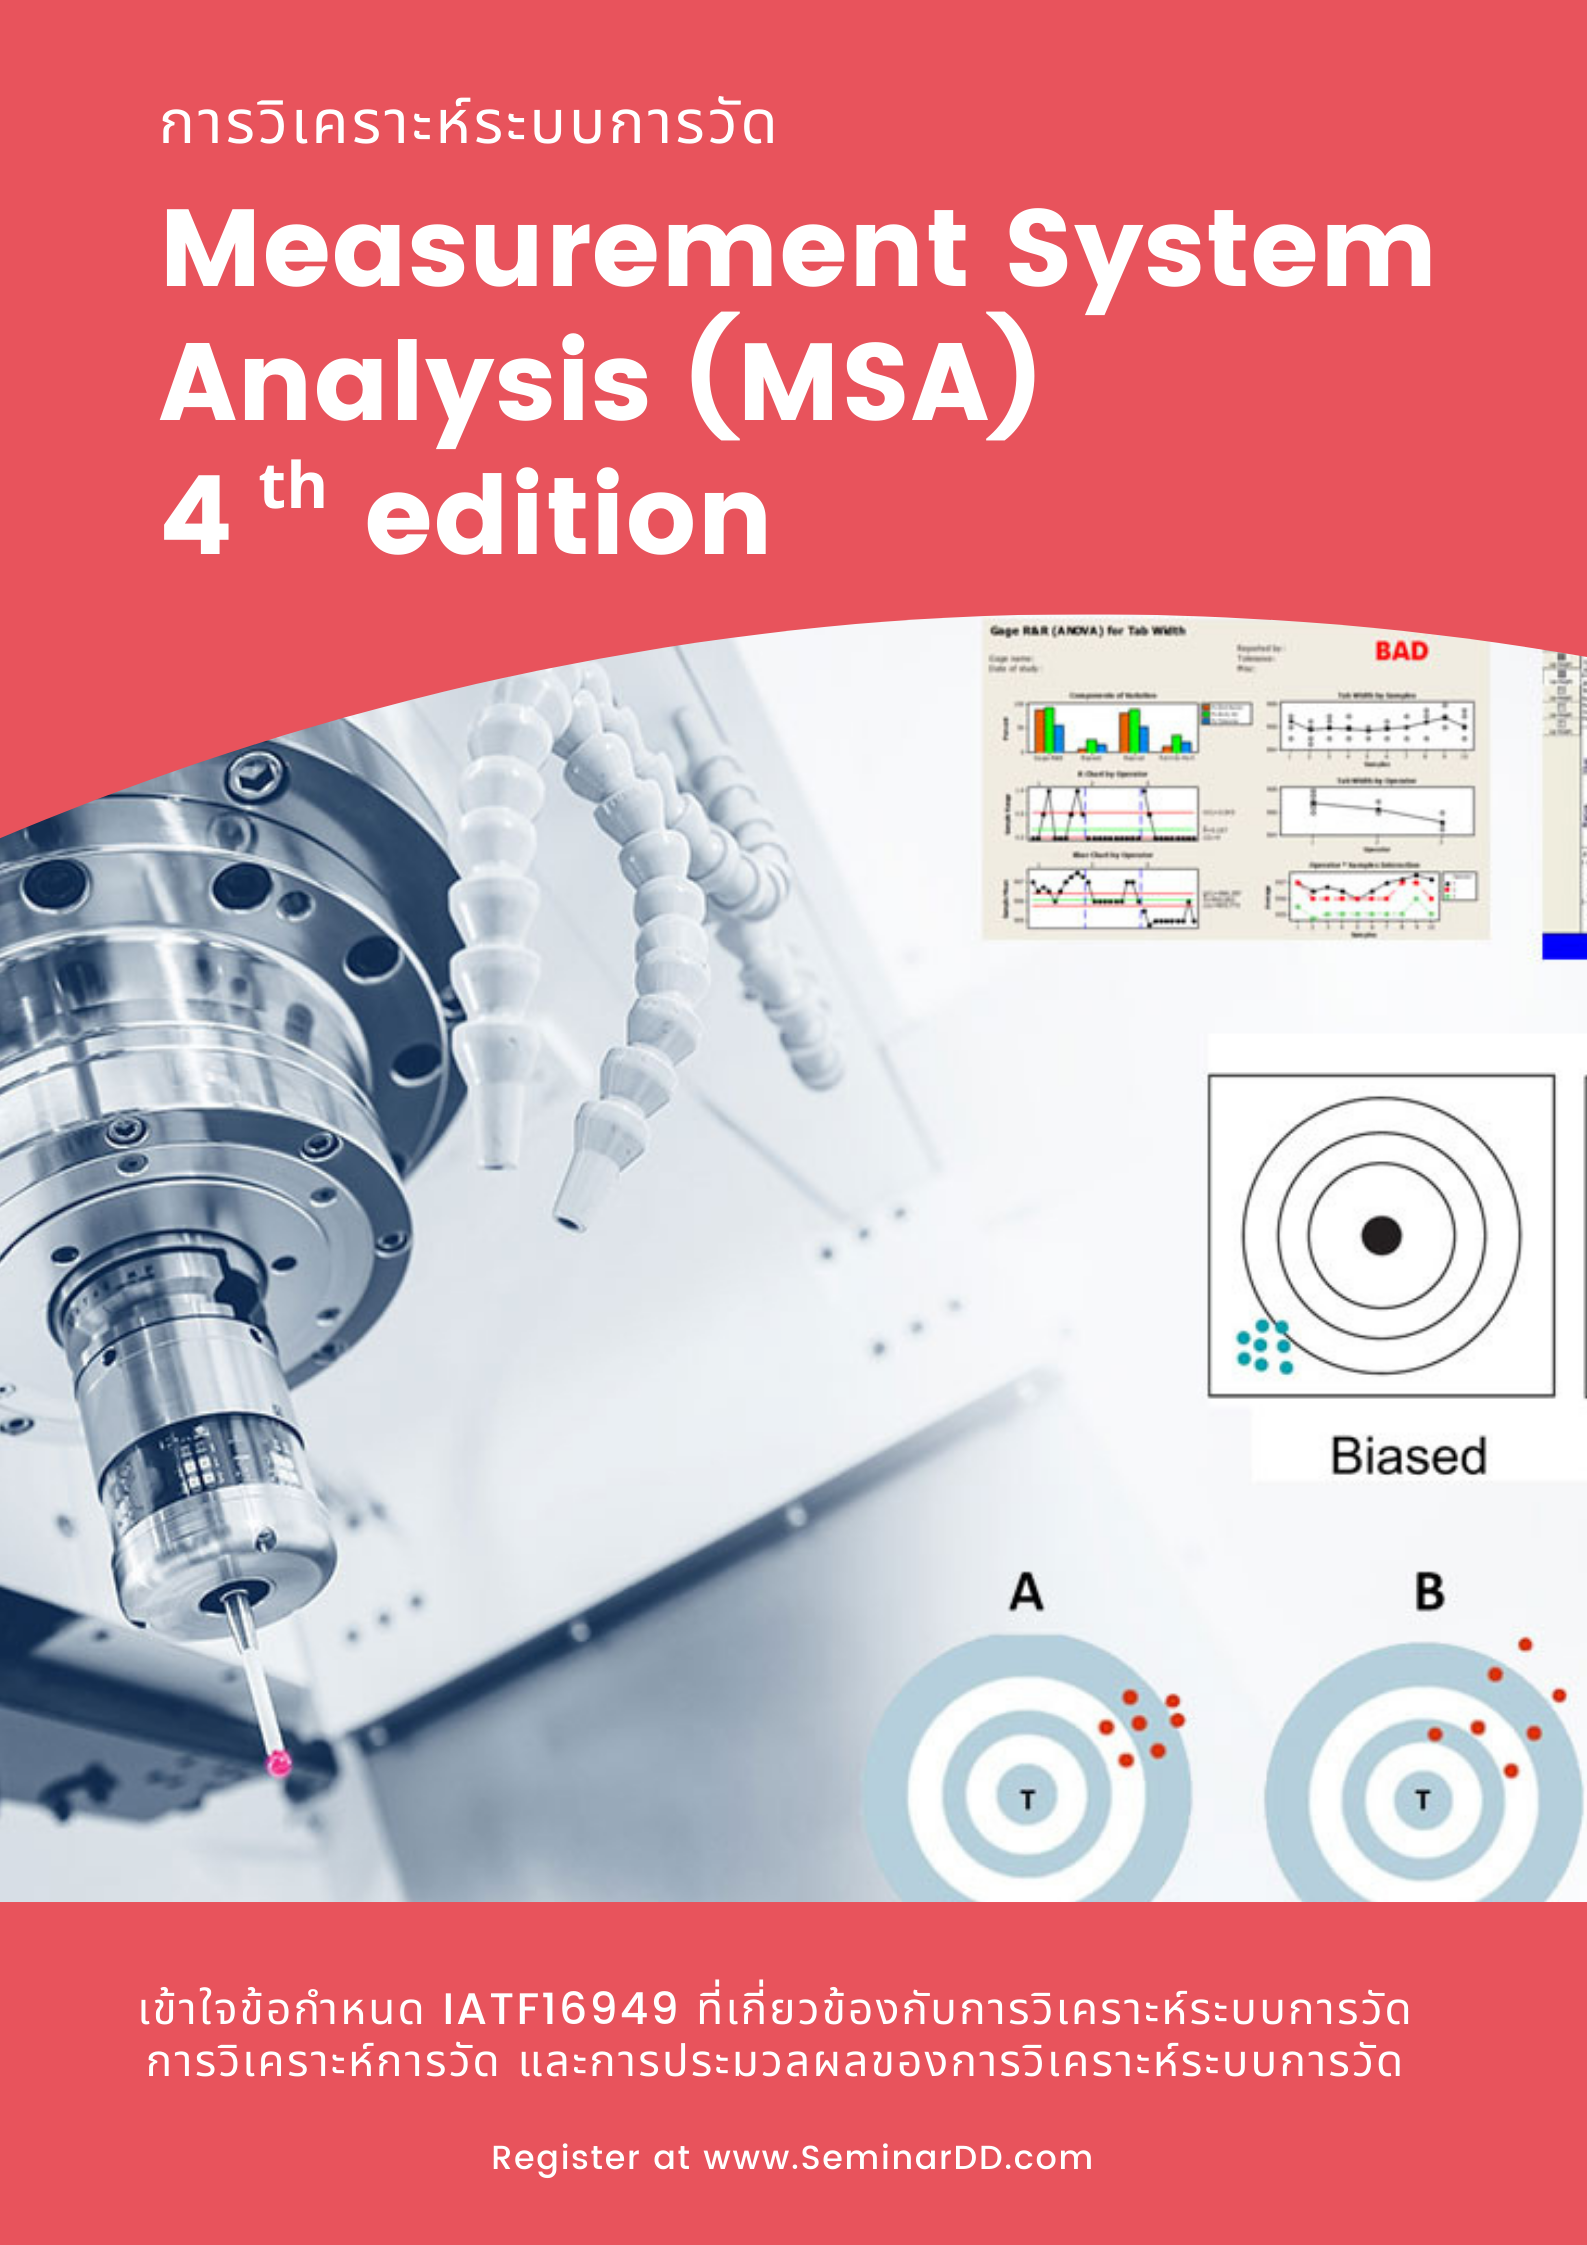 อบรม หลักสูตร การวิเคราะห์ระบบการวัด (Measurement System Analysis 4th edition - MSA)